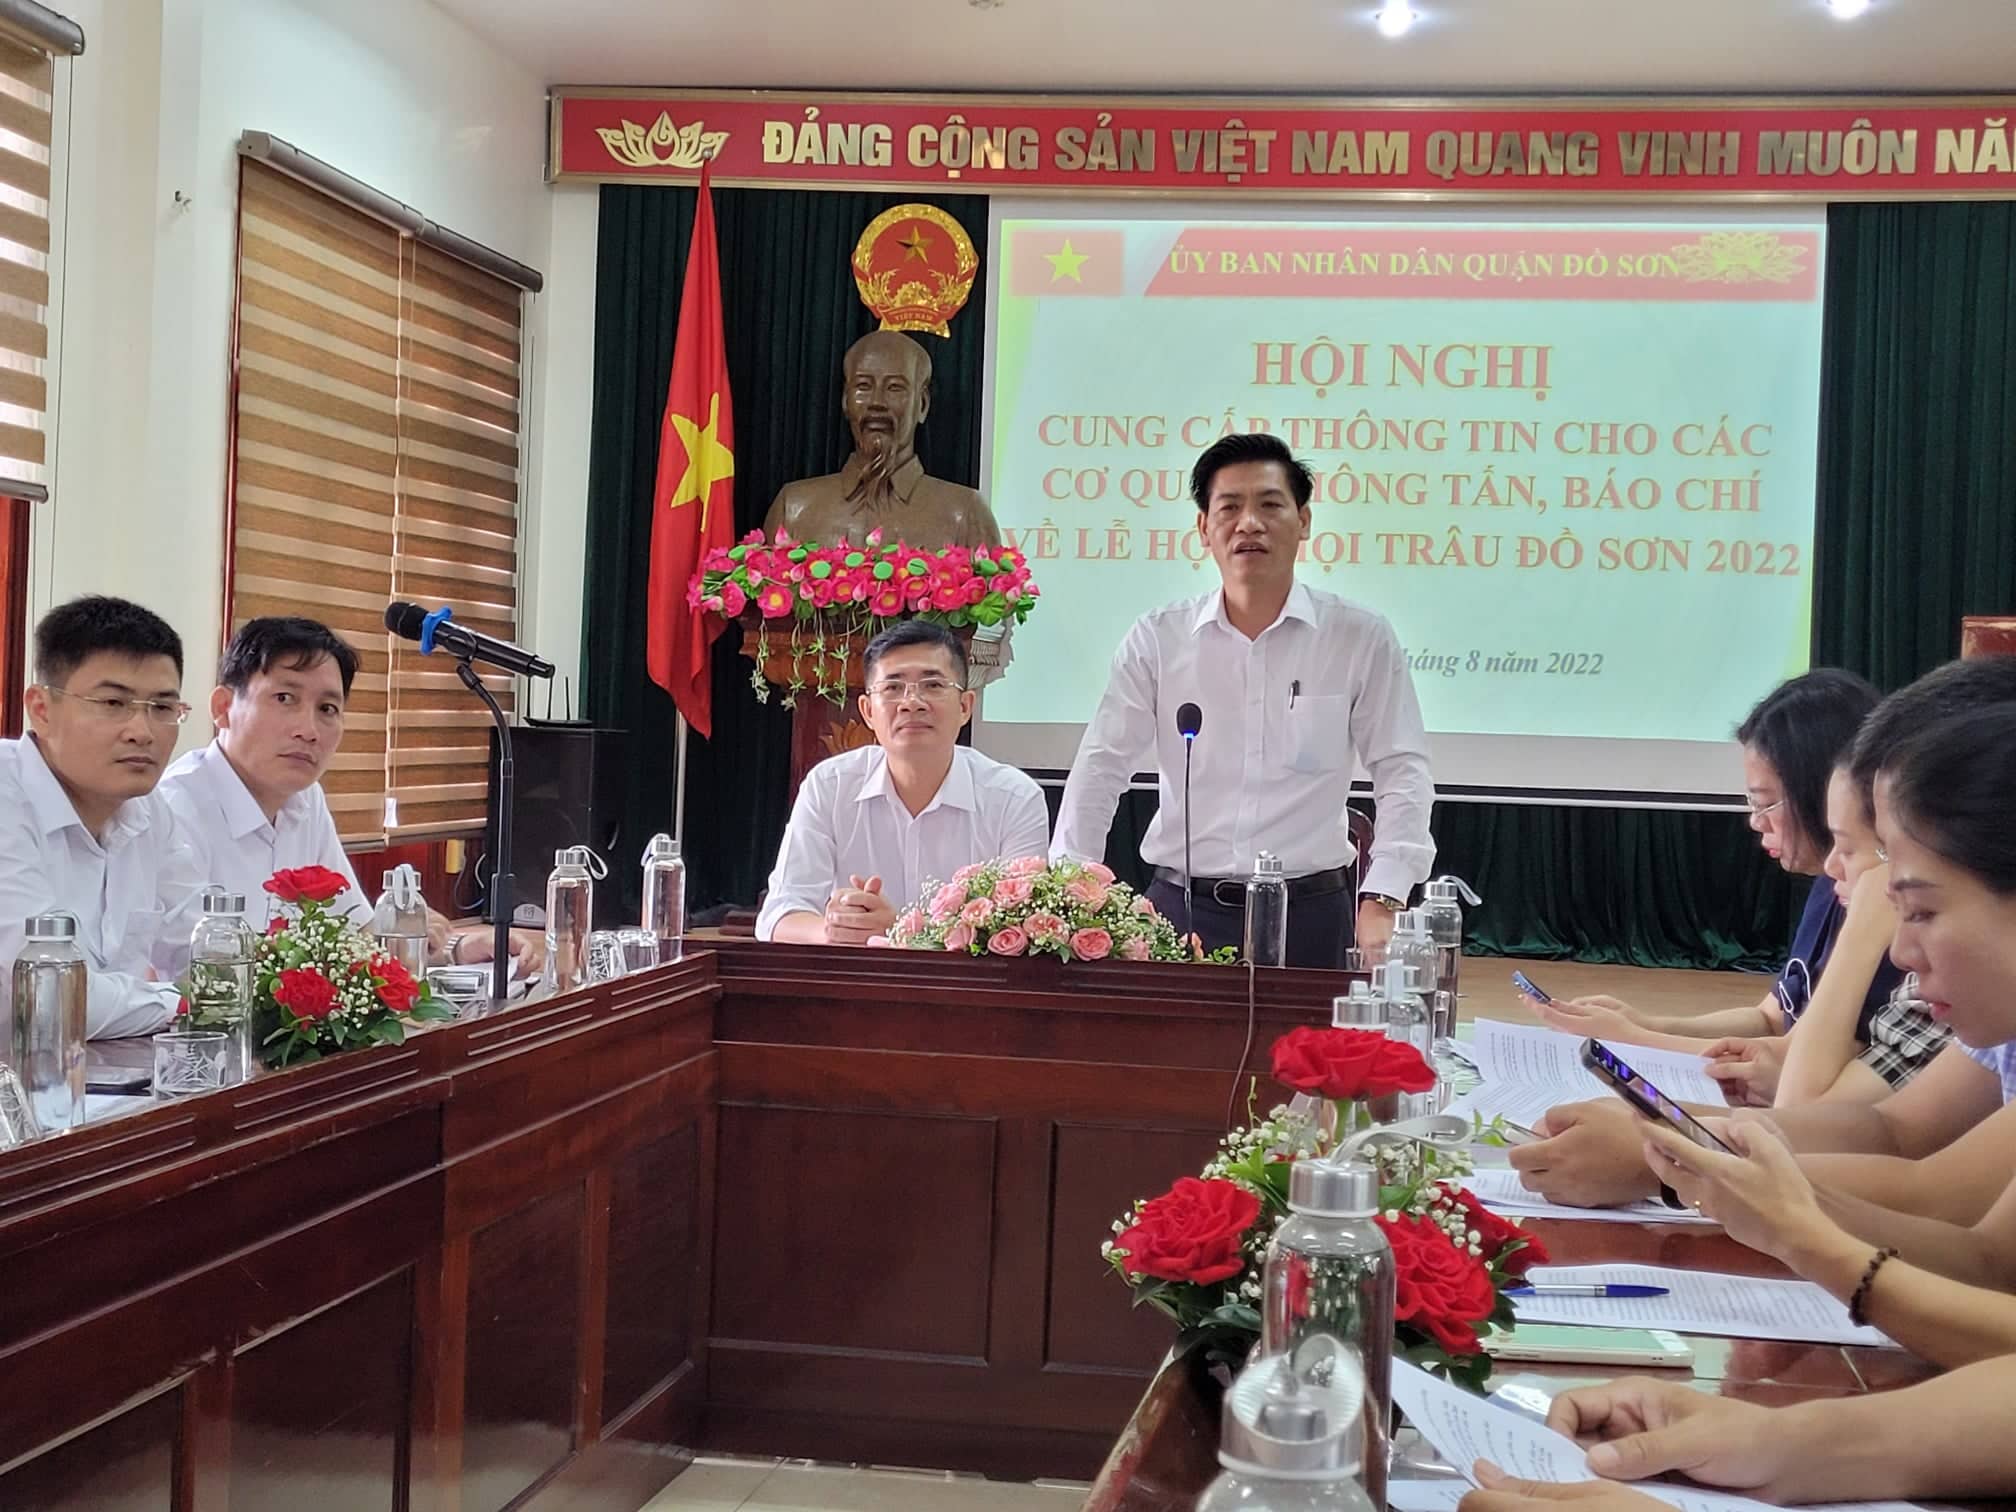 Ông Phạm Hoàng Tuấn, Phó Chủ tịch UBND quận Đồ Sơn thông tin tại cuộc họp báo. Ảnh: Thanh Sơn